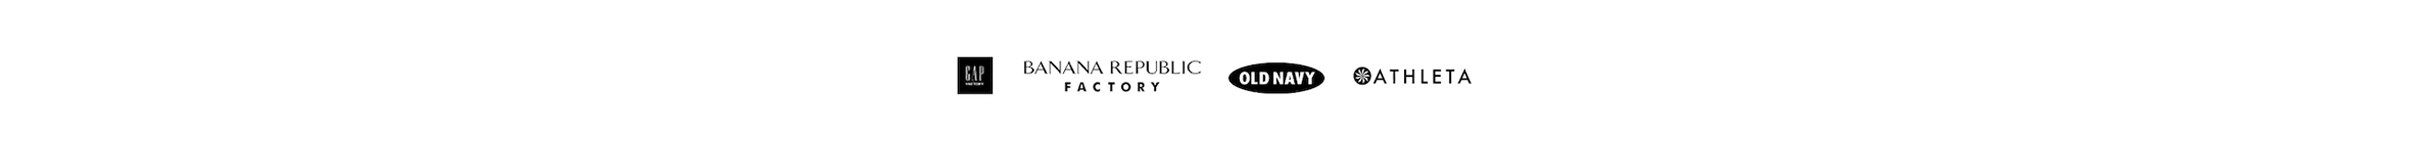 Gap, Banana Republic, Old Navy, and Athleta logos